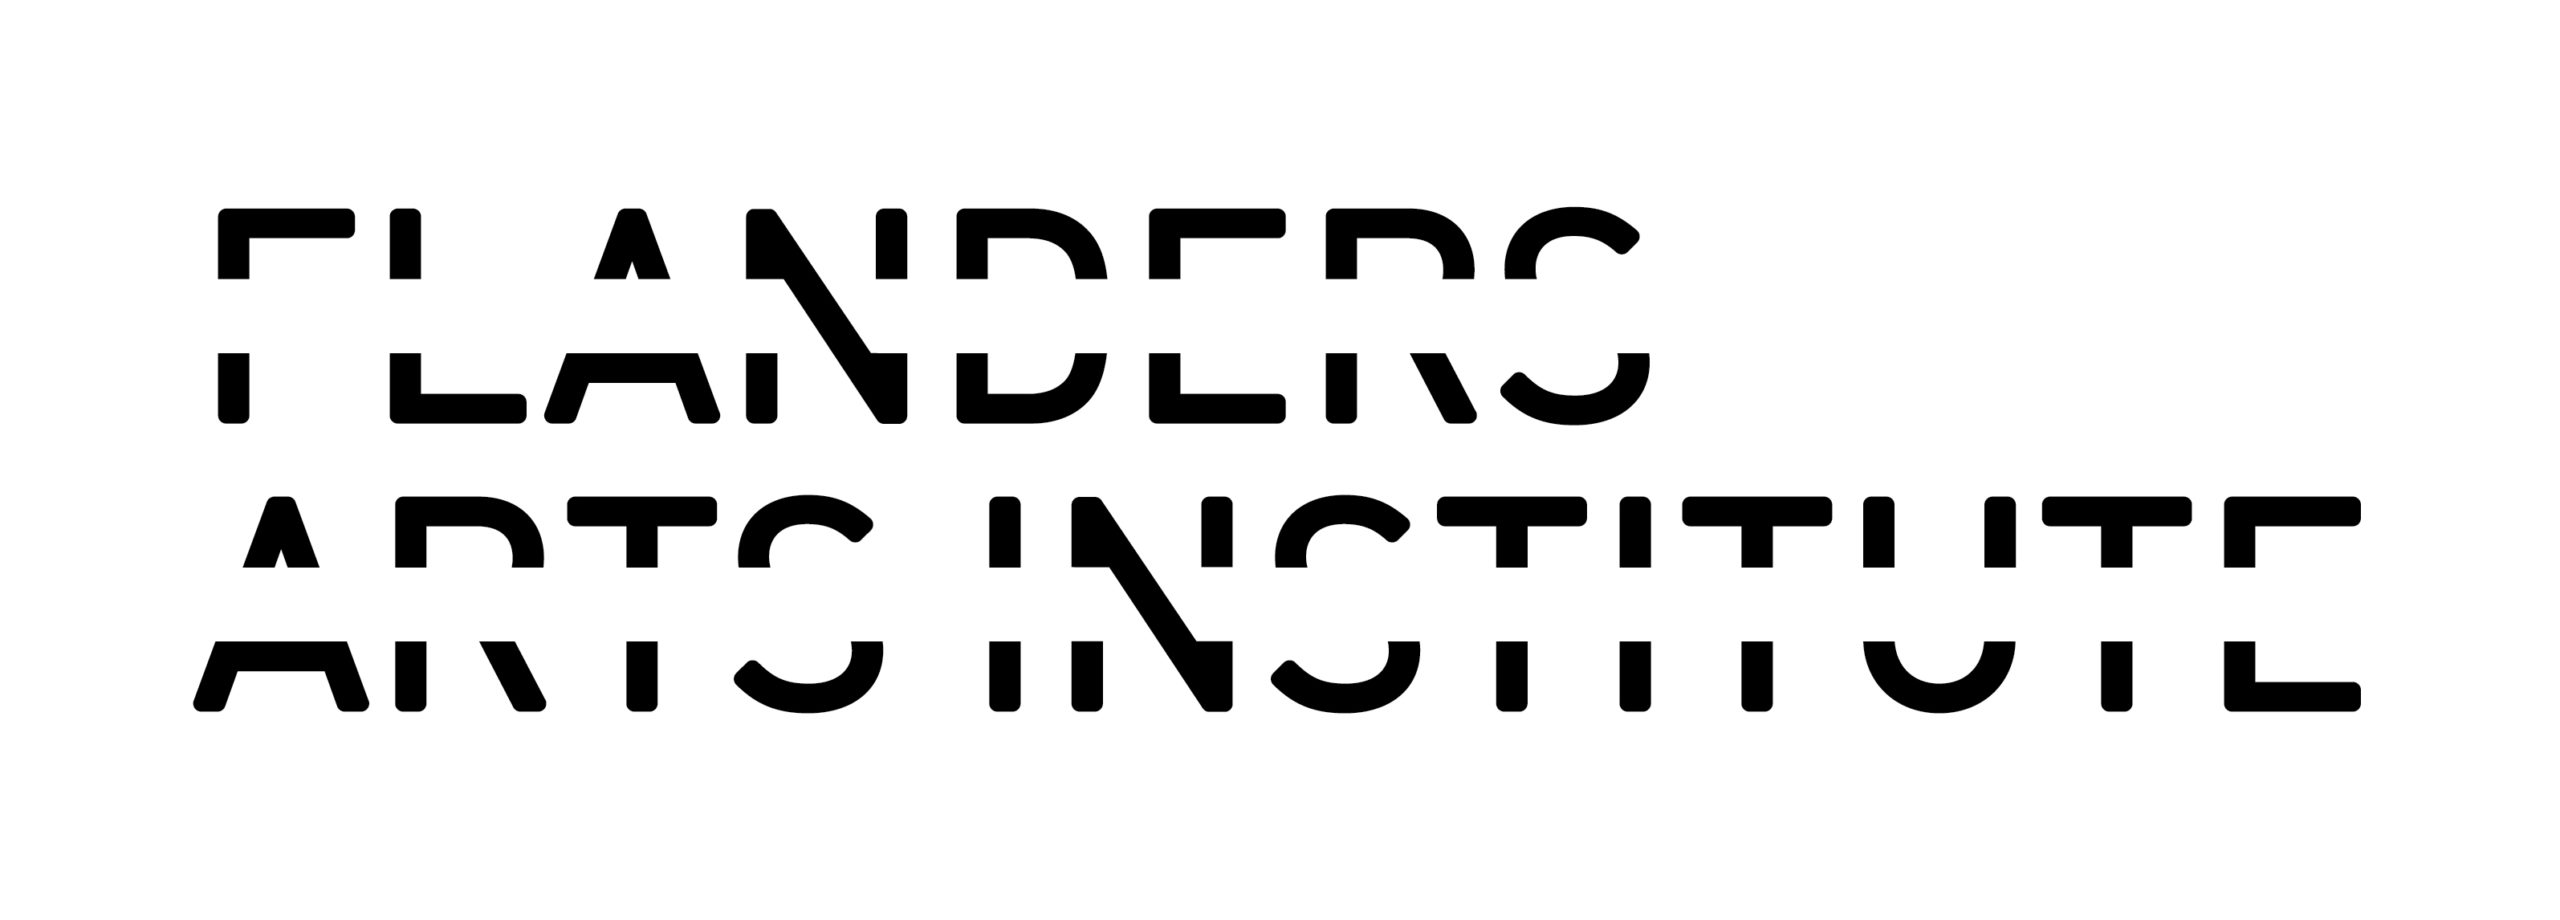 Flanders Arts Institute